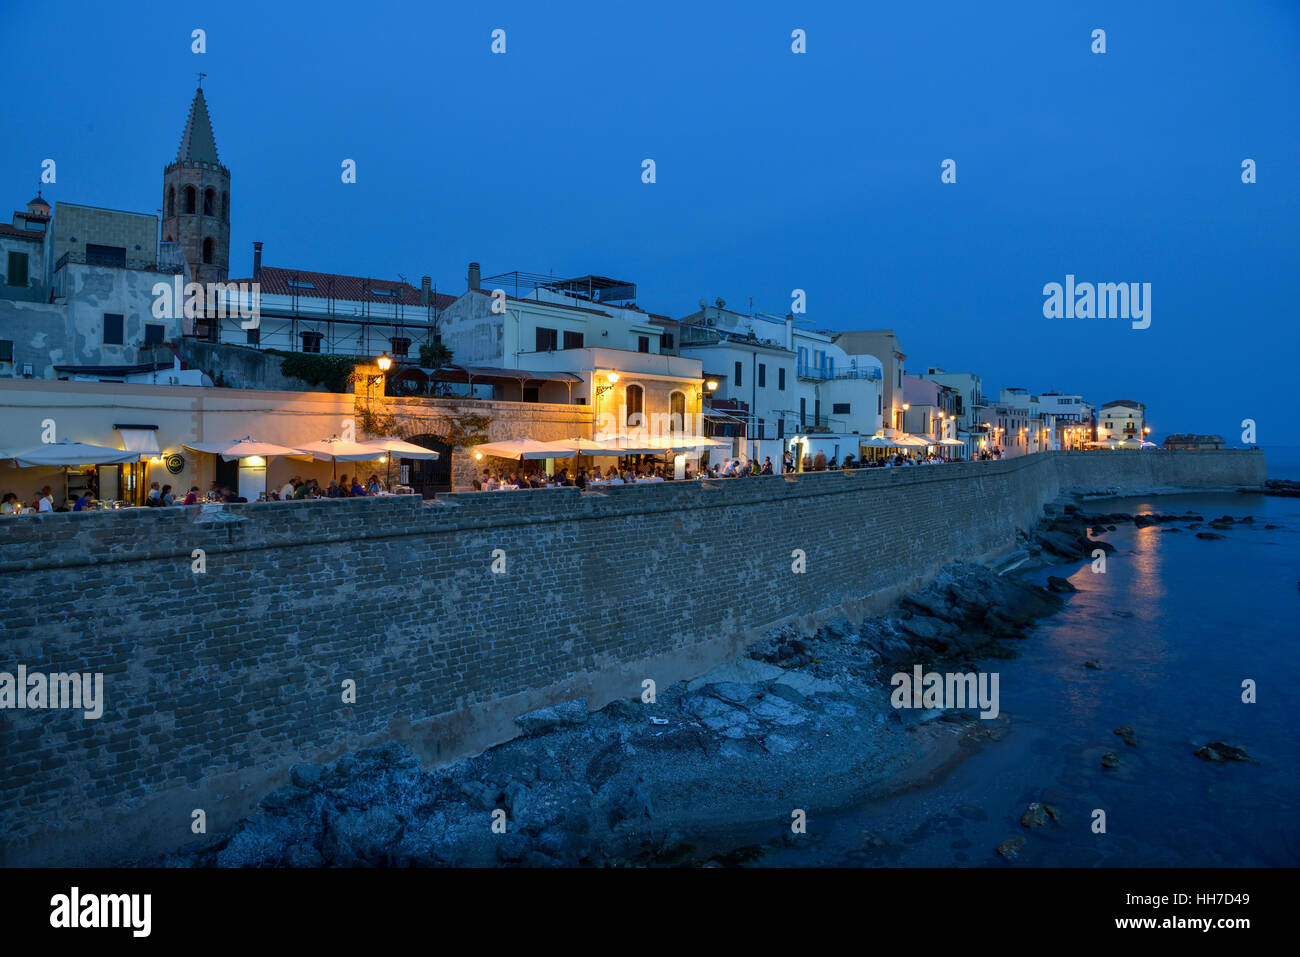 Fila di case, ristoranti e le mura cittadine, crepuscolo, Alghero, provincia di Sassari, Sardegna, Italia Foto Stock